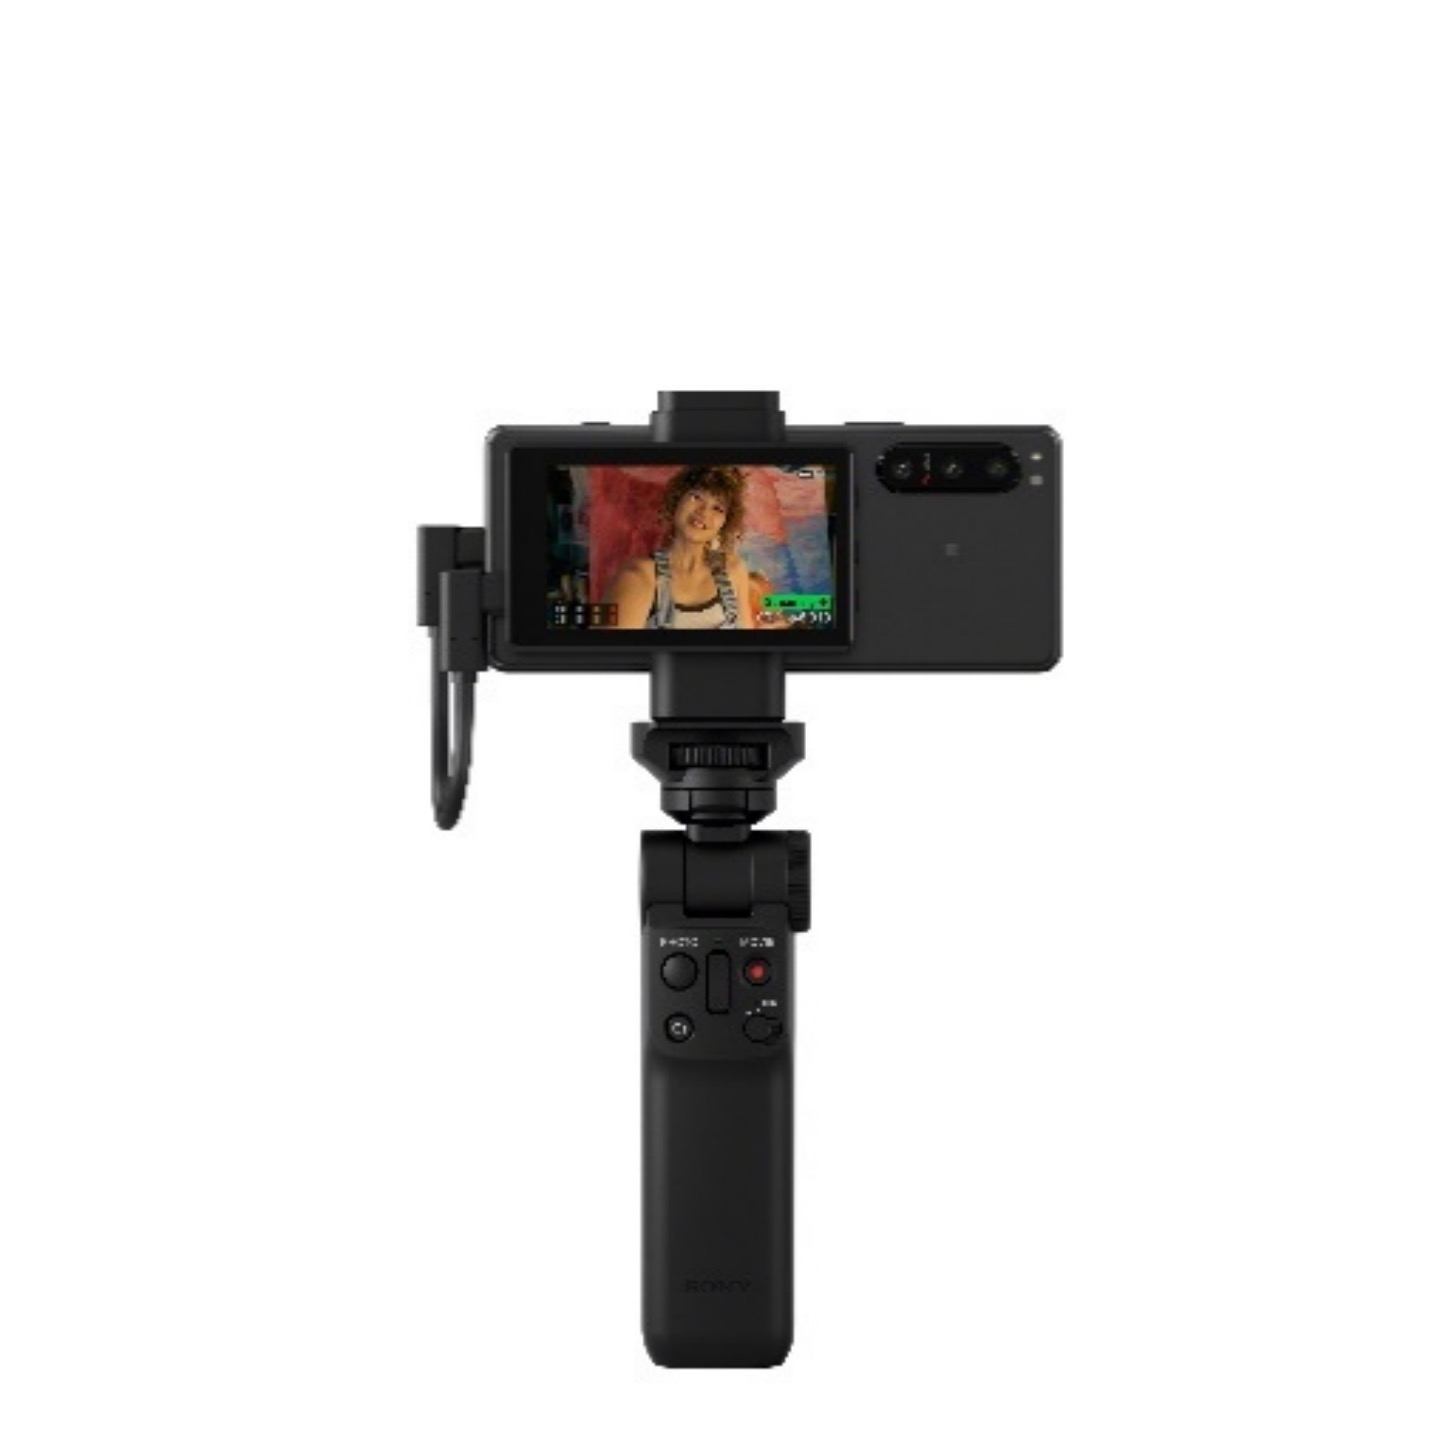 索尼微单手机Xperia 5 IV发布 高快三摄及对焦帮力创作太原写真拍摄